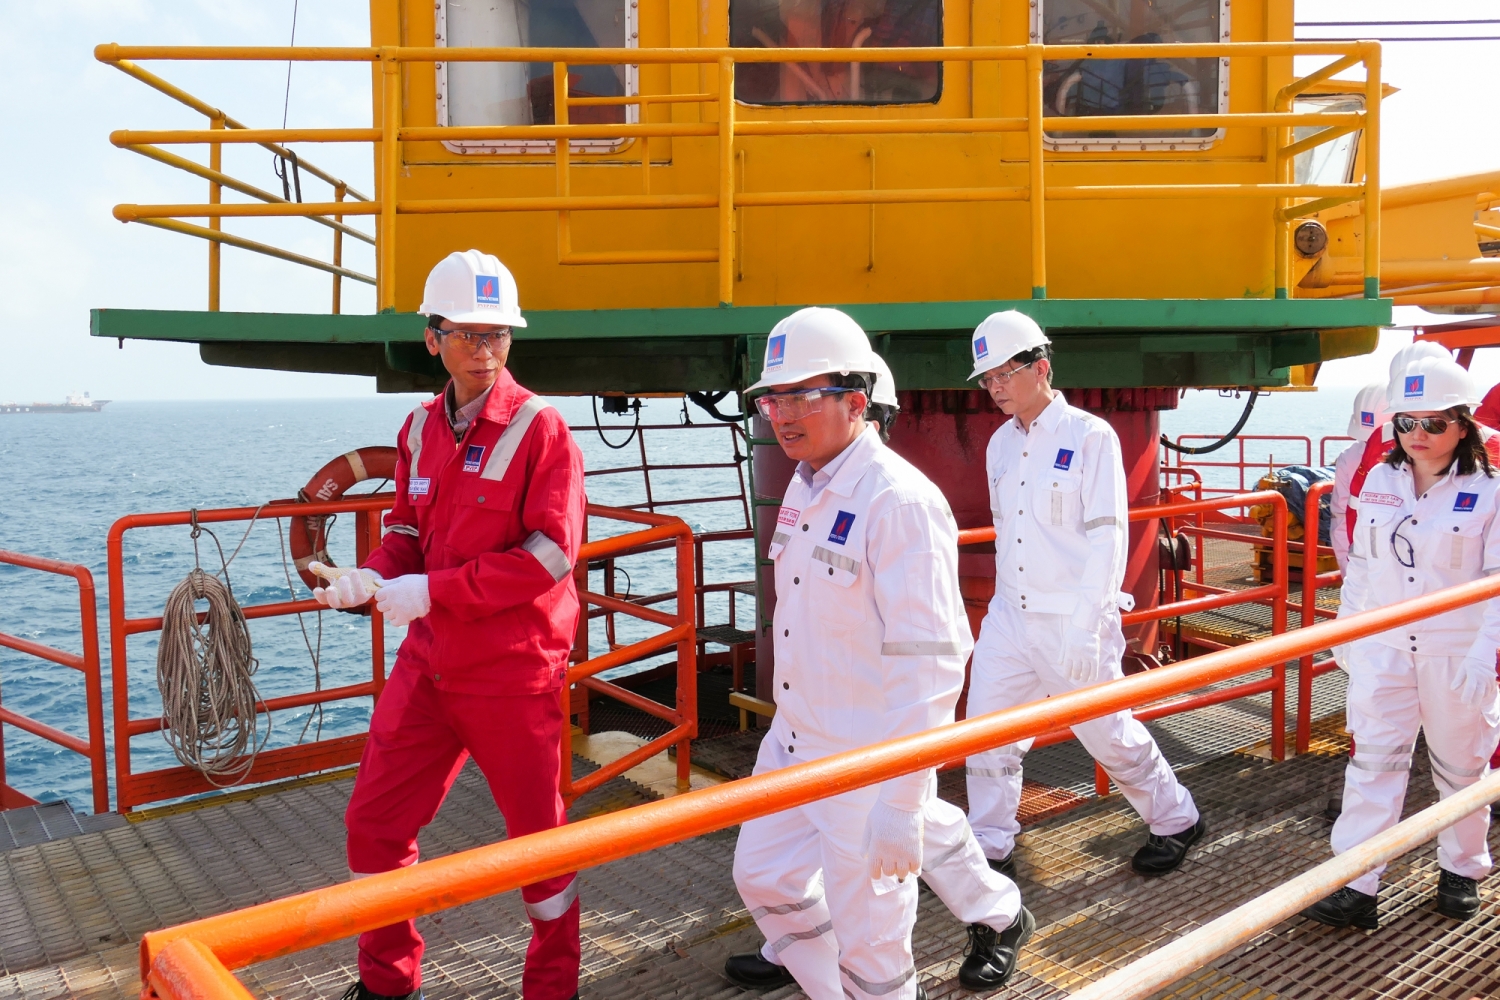 Đồng chí Hoàng Quốc Vượng - Bí thư Đảng ủy, Chủ tịch HĐTV Petrovietnam kiểm tra công tác trên công trình biển